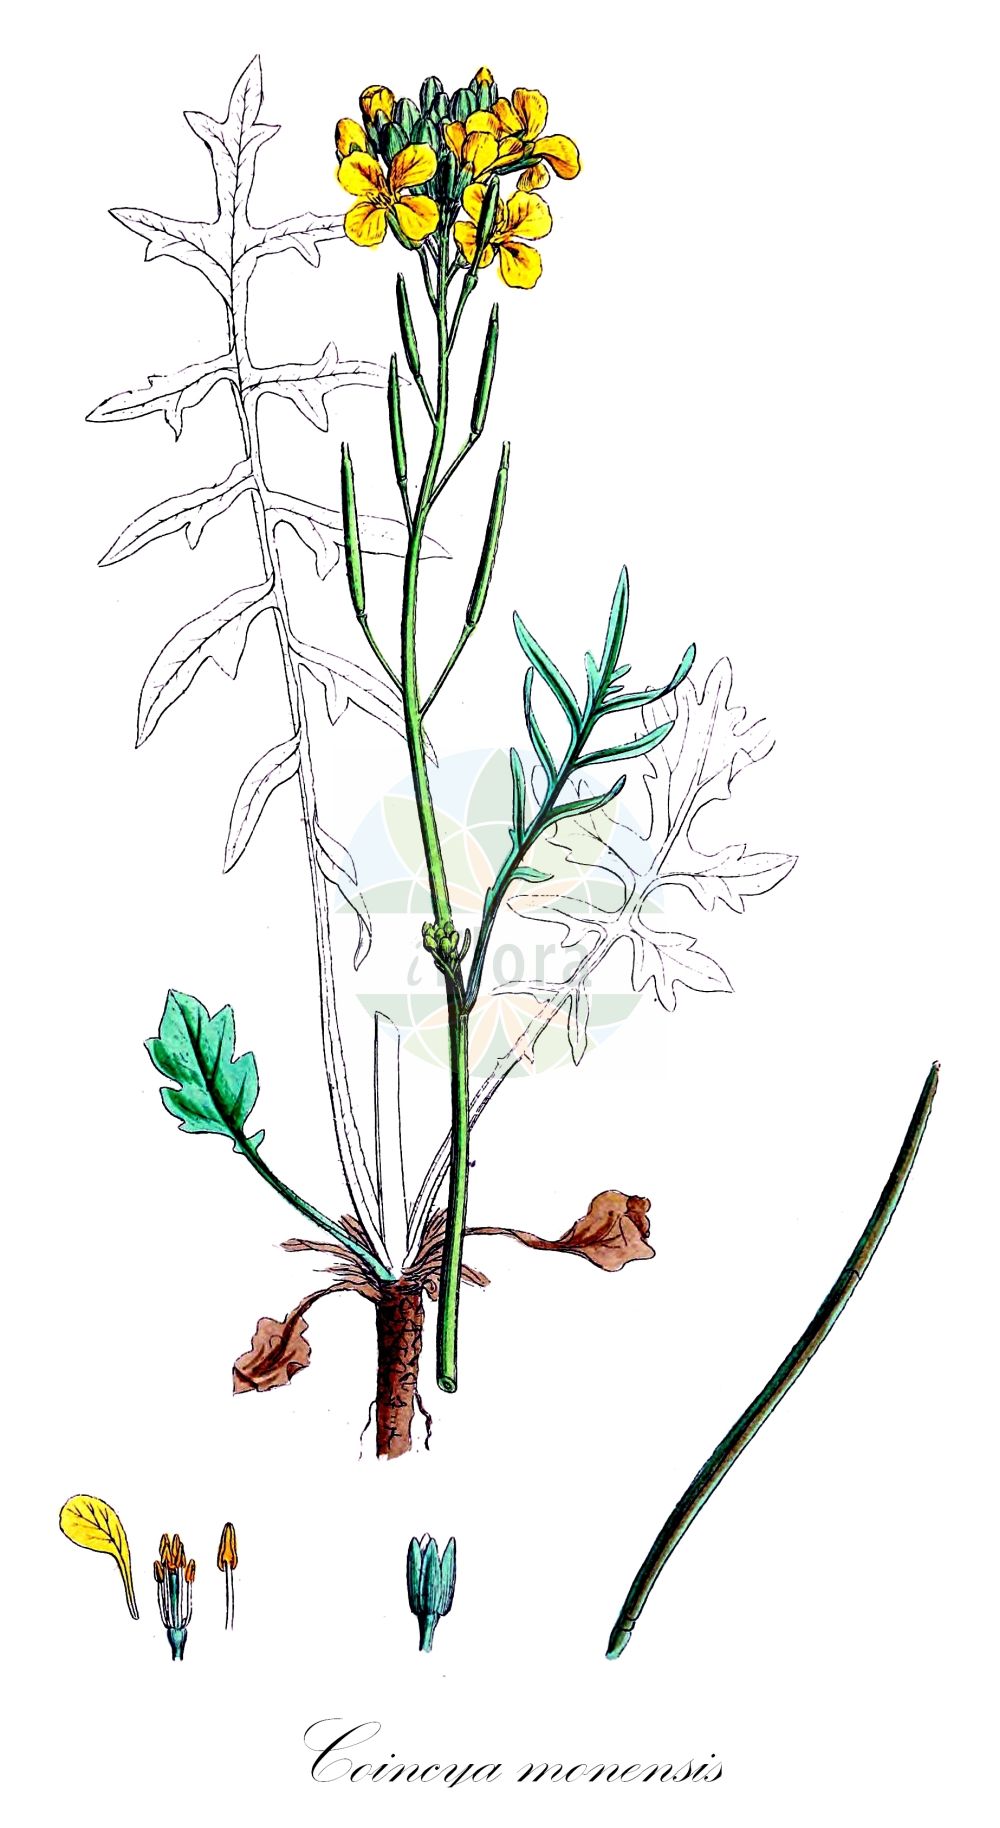 Historische Abbildung von Coincya monensis (Schnabelsenf - Isle Of Man Cabbage). Das Bild zeigt Blatt, Bluete, Frucht und Same. ---- Historical Drawing of Coincya monensis (Schnabelsenf - Isle Of Man Cabbage). The image is showing leaf, flower, fruit and seed.(Coincya monensis,Schnabelsenf,Isle Of Man Cabbage,Brassica monensis,Brassica pseuderucastrum,Brassicella monensis,Brassicella pseuderucastrum,Coincya monensis,Hutera monensis,Rhynchosinapis monensis,Rhynchosinapis pseuderucastrum,Sisymbrium monense,Schnabelsenf,Isle Of Man Cabbage,Star-mustard,Coincya,Lacksenf,Star-mustard,Brassicaceae,Kreuzblütler,Cabbage family,Blatt,Bluete,Frucht,Same,leaf,flower,fruit,seed,Sowerby (1790-1813))